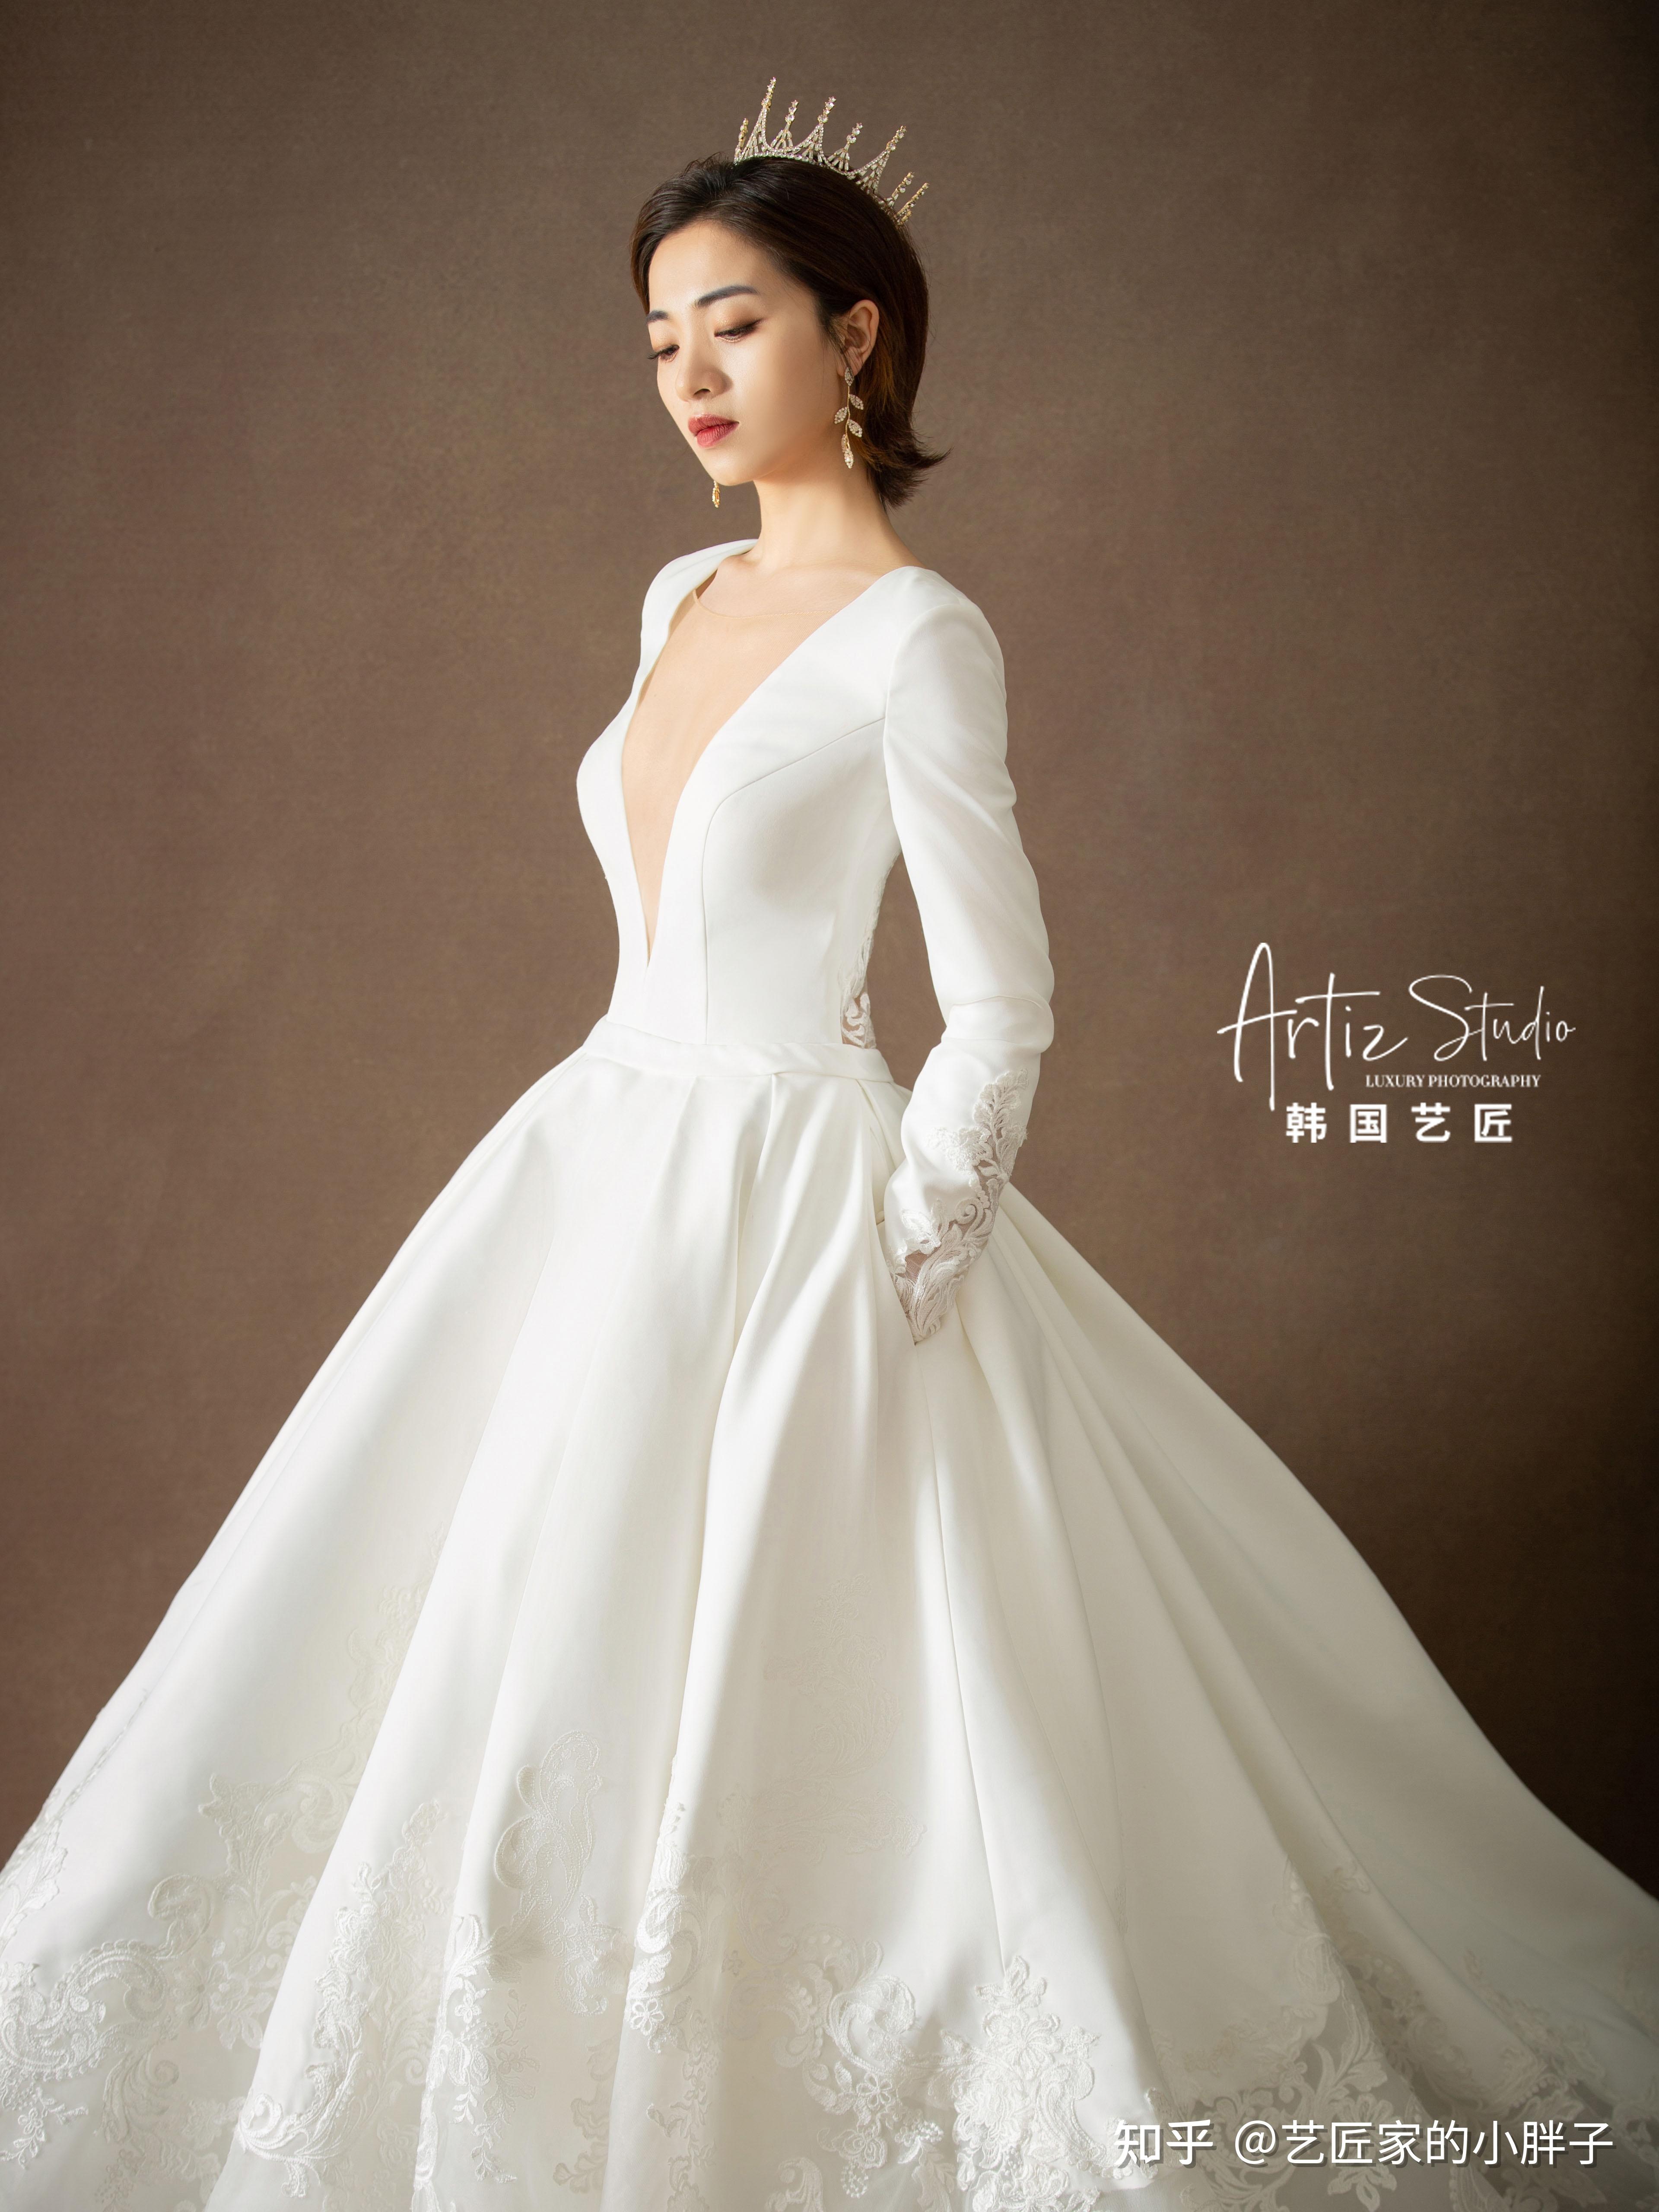 韩国艺匠丨甜御双杀——超适合短发新娘的极简婚纱照 